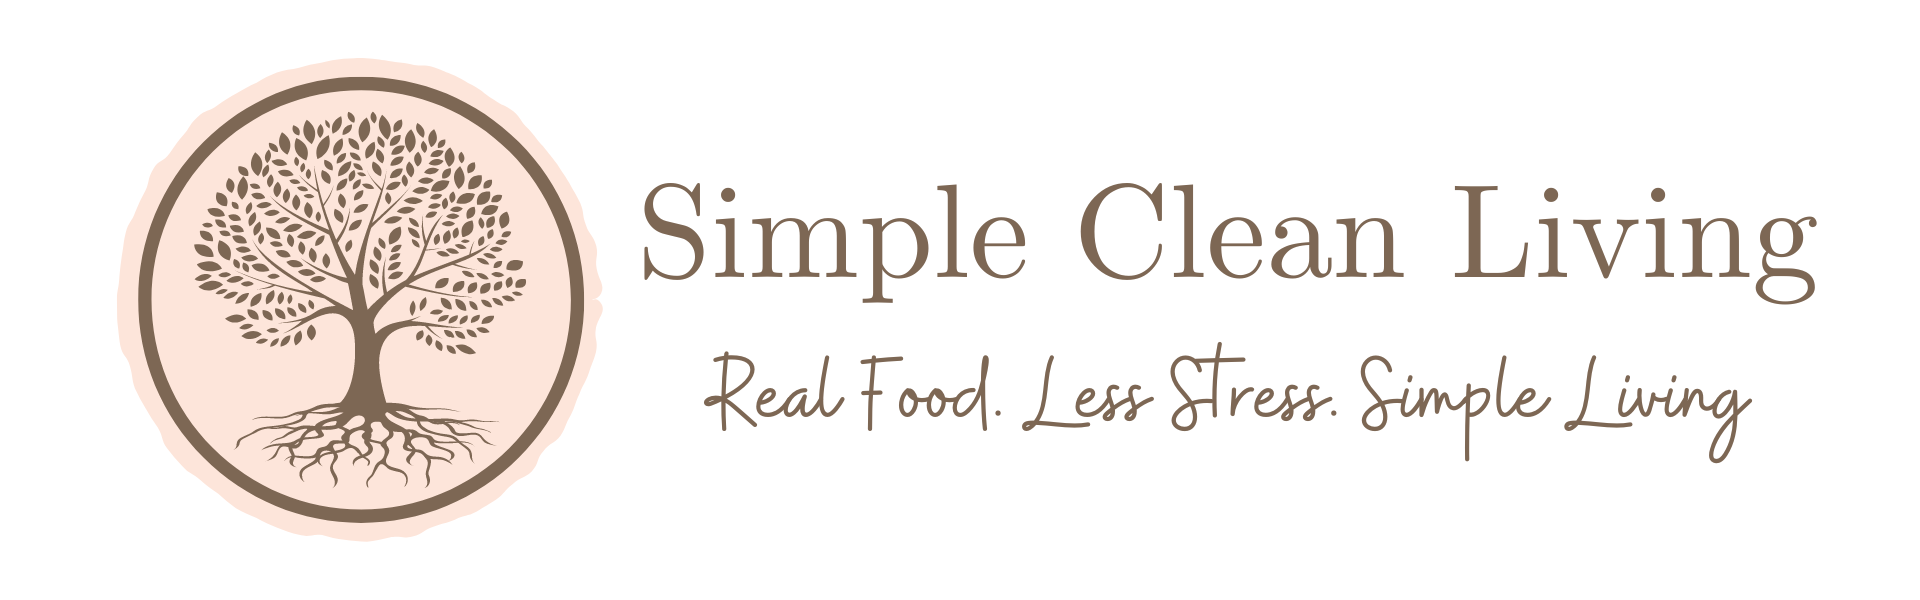 Simple Clean Living